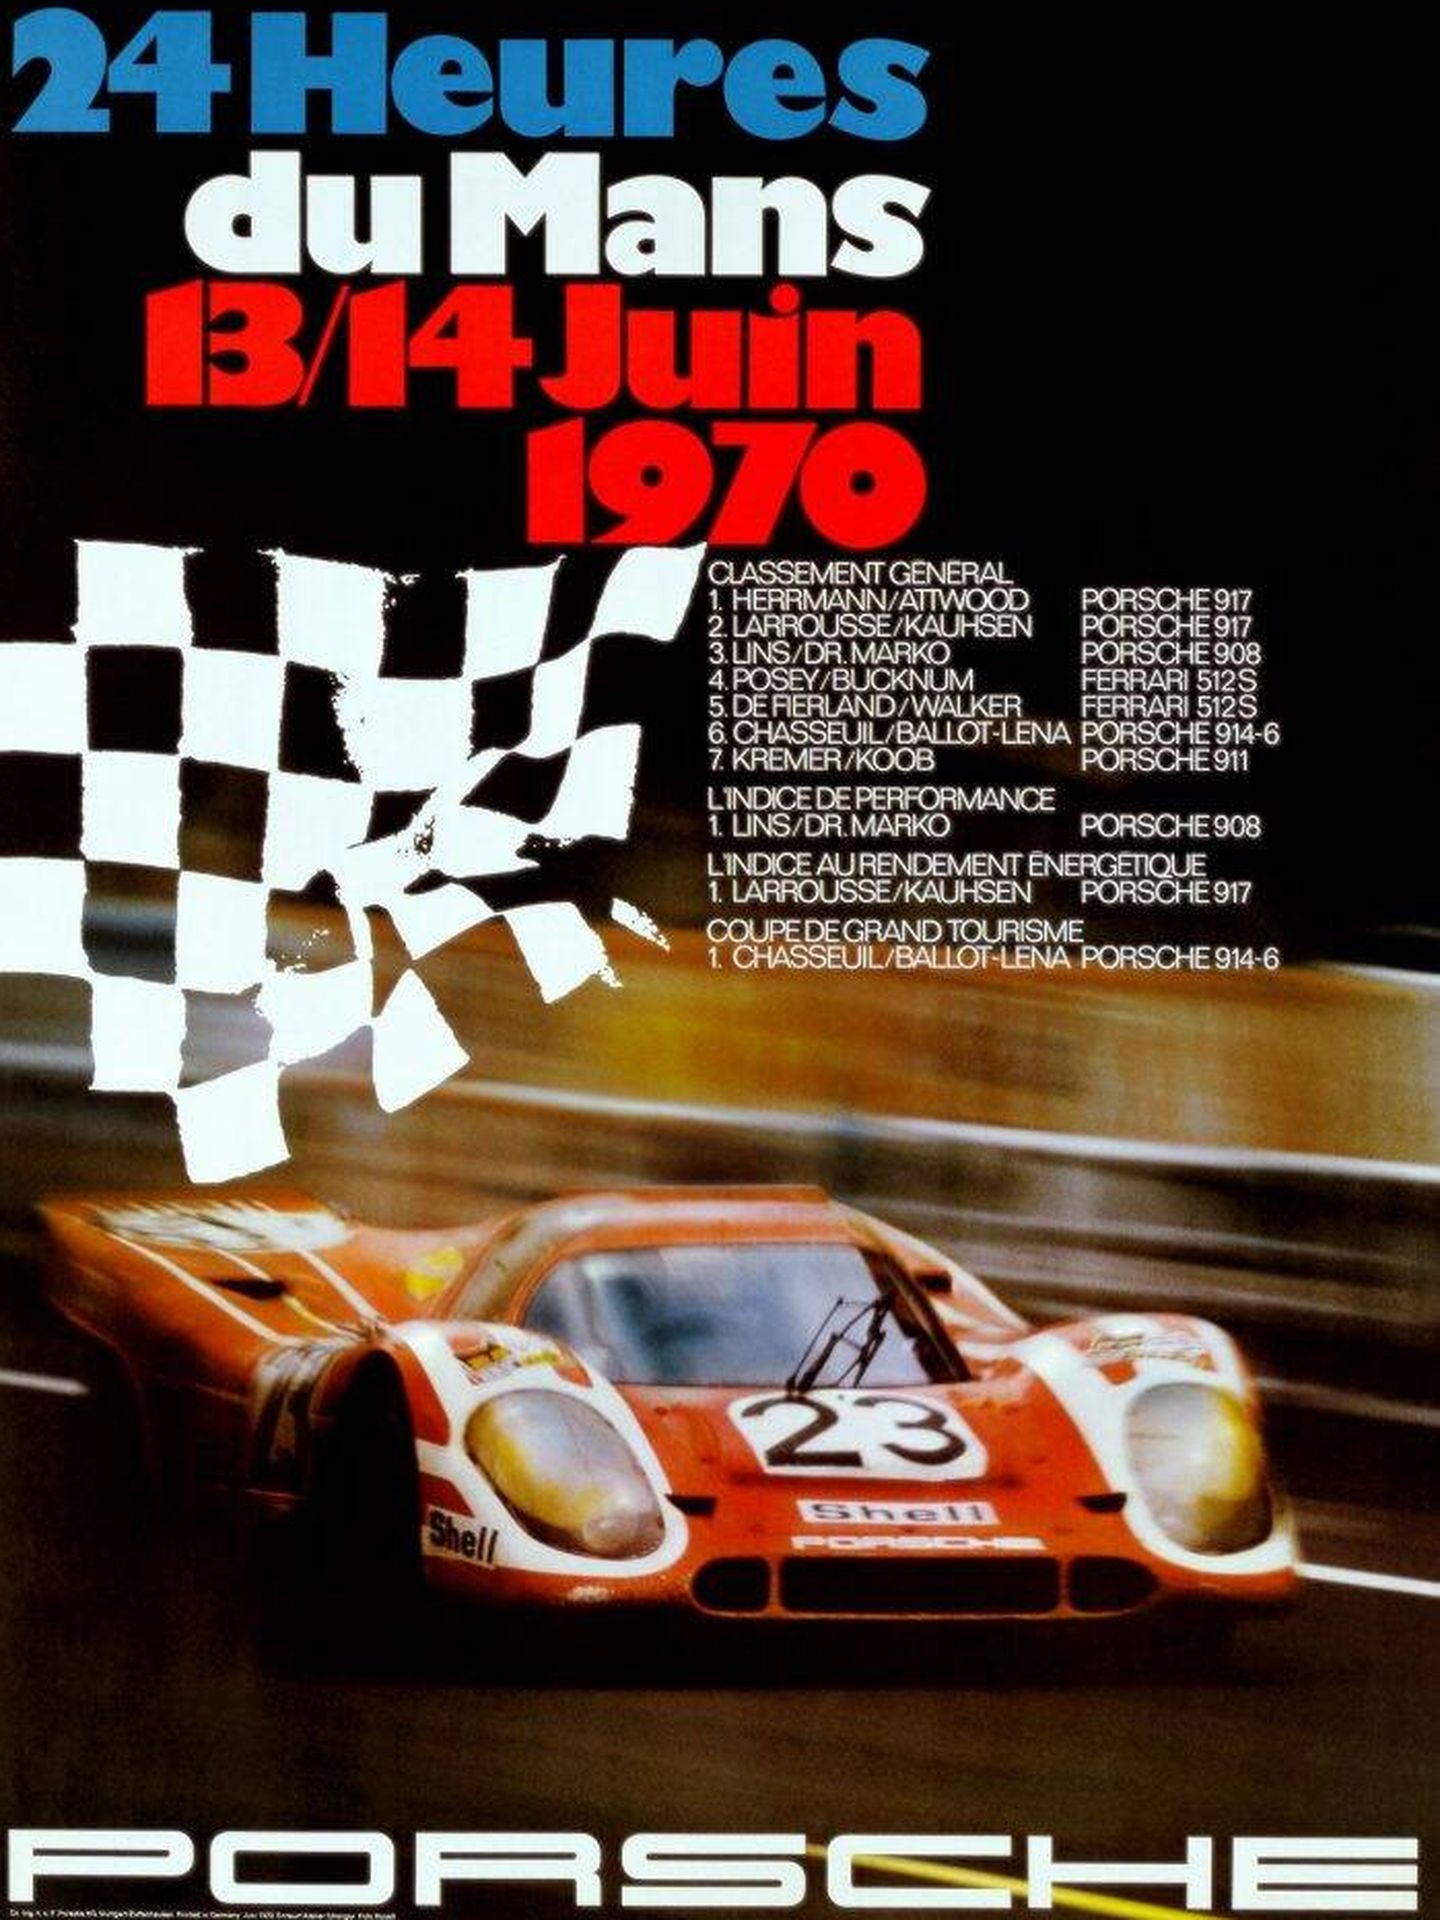 El nombre de las 24 horas de Le Mans y Porsche van unidos (FOTO: Porsche)